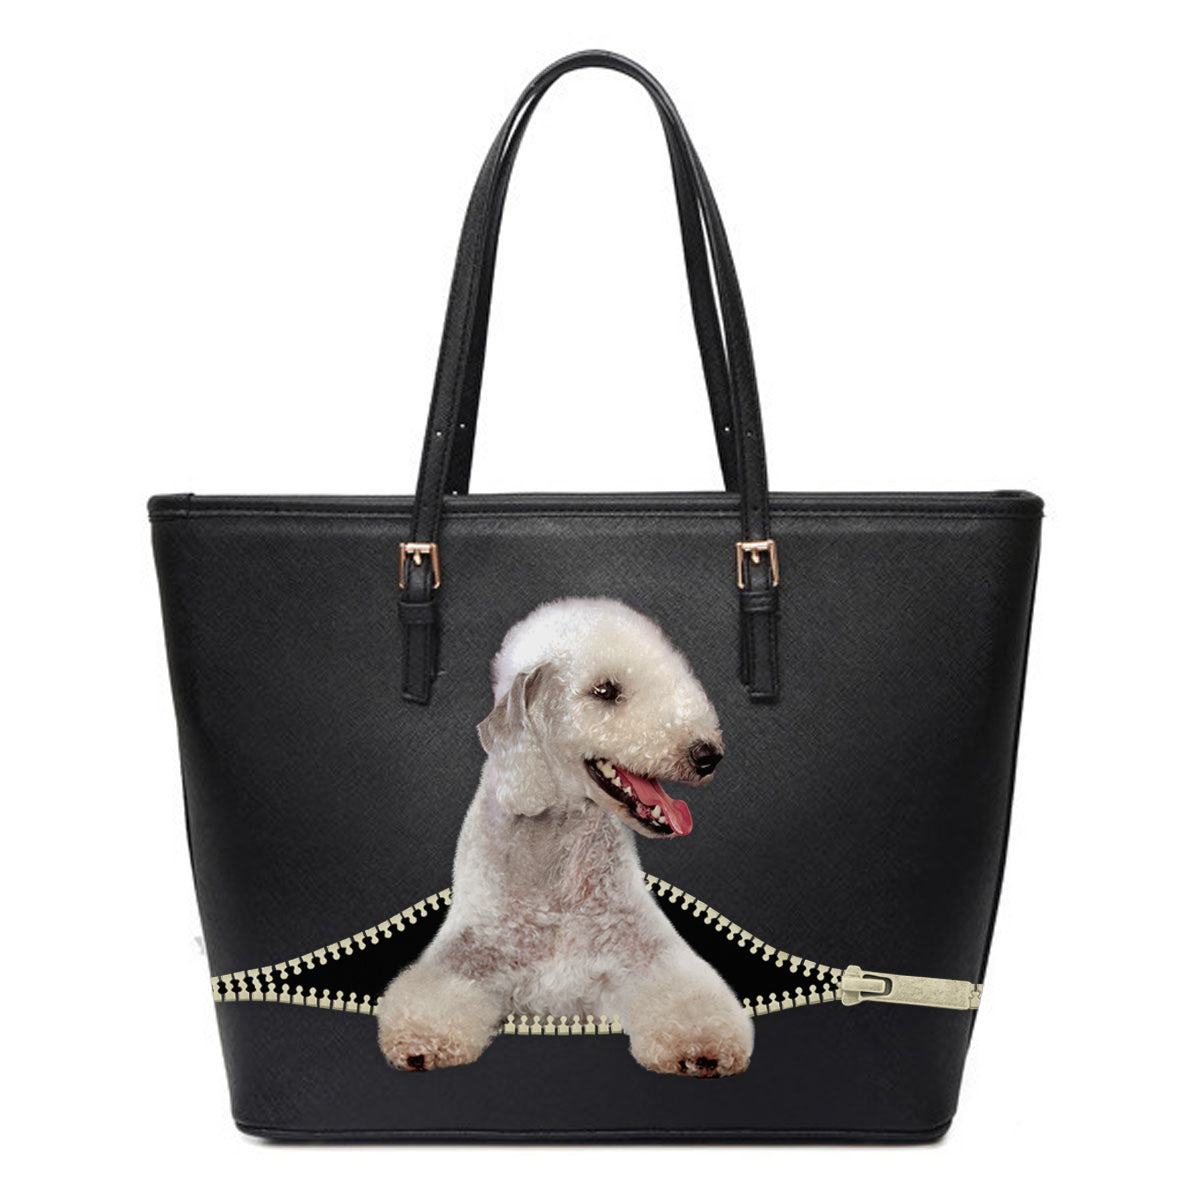 Bedlington Terrier Tote Bag V1